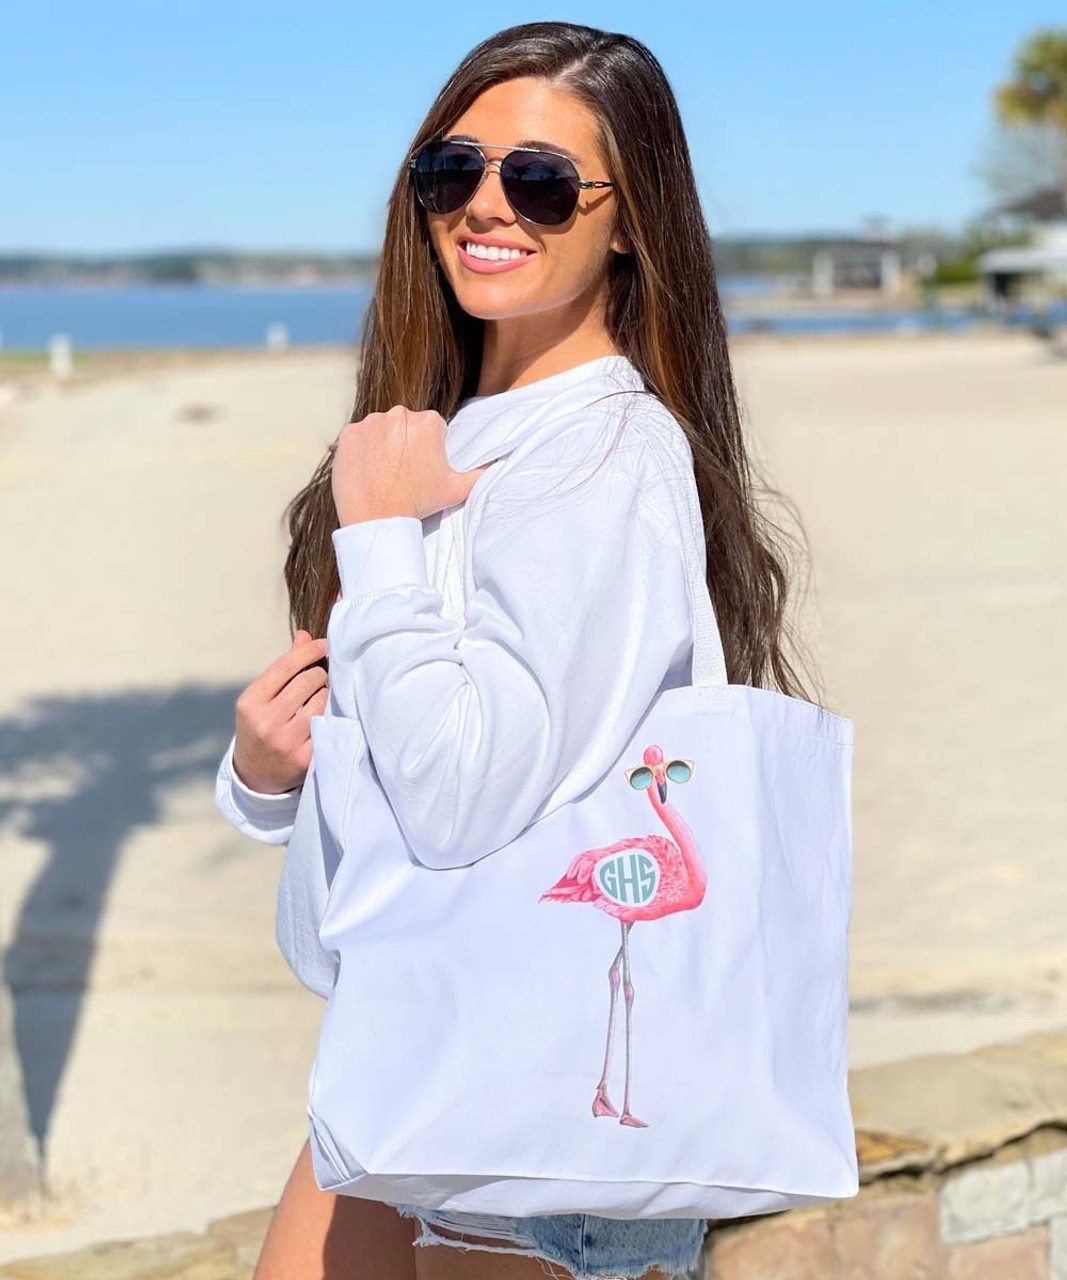 Flamingo Beach Bag | Womens